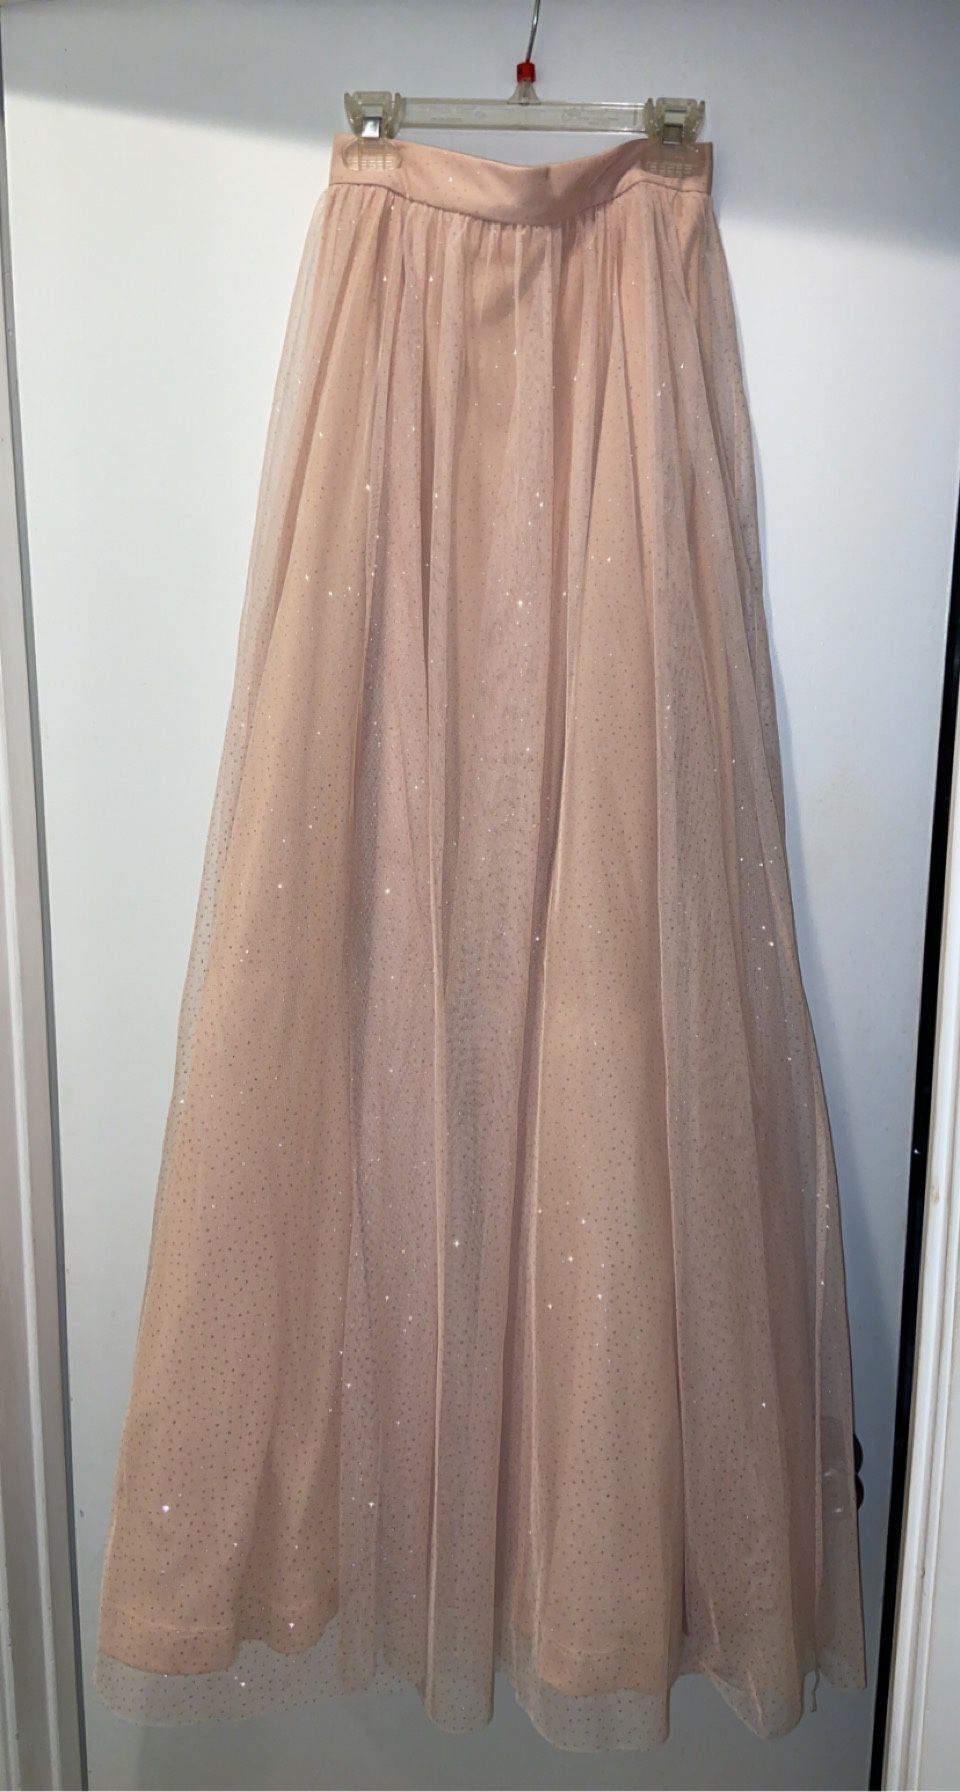 Glittery / Shimmery Tulle Skirt (Prom, Wedding, Fancy, Elegant)